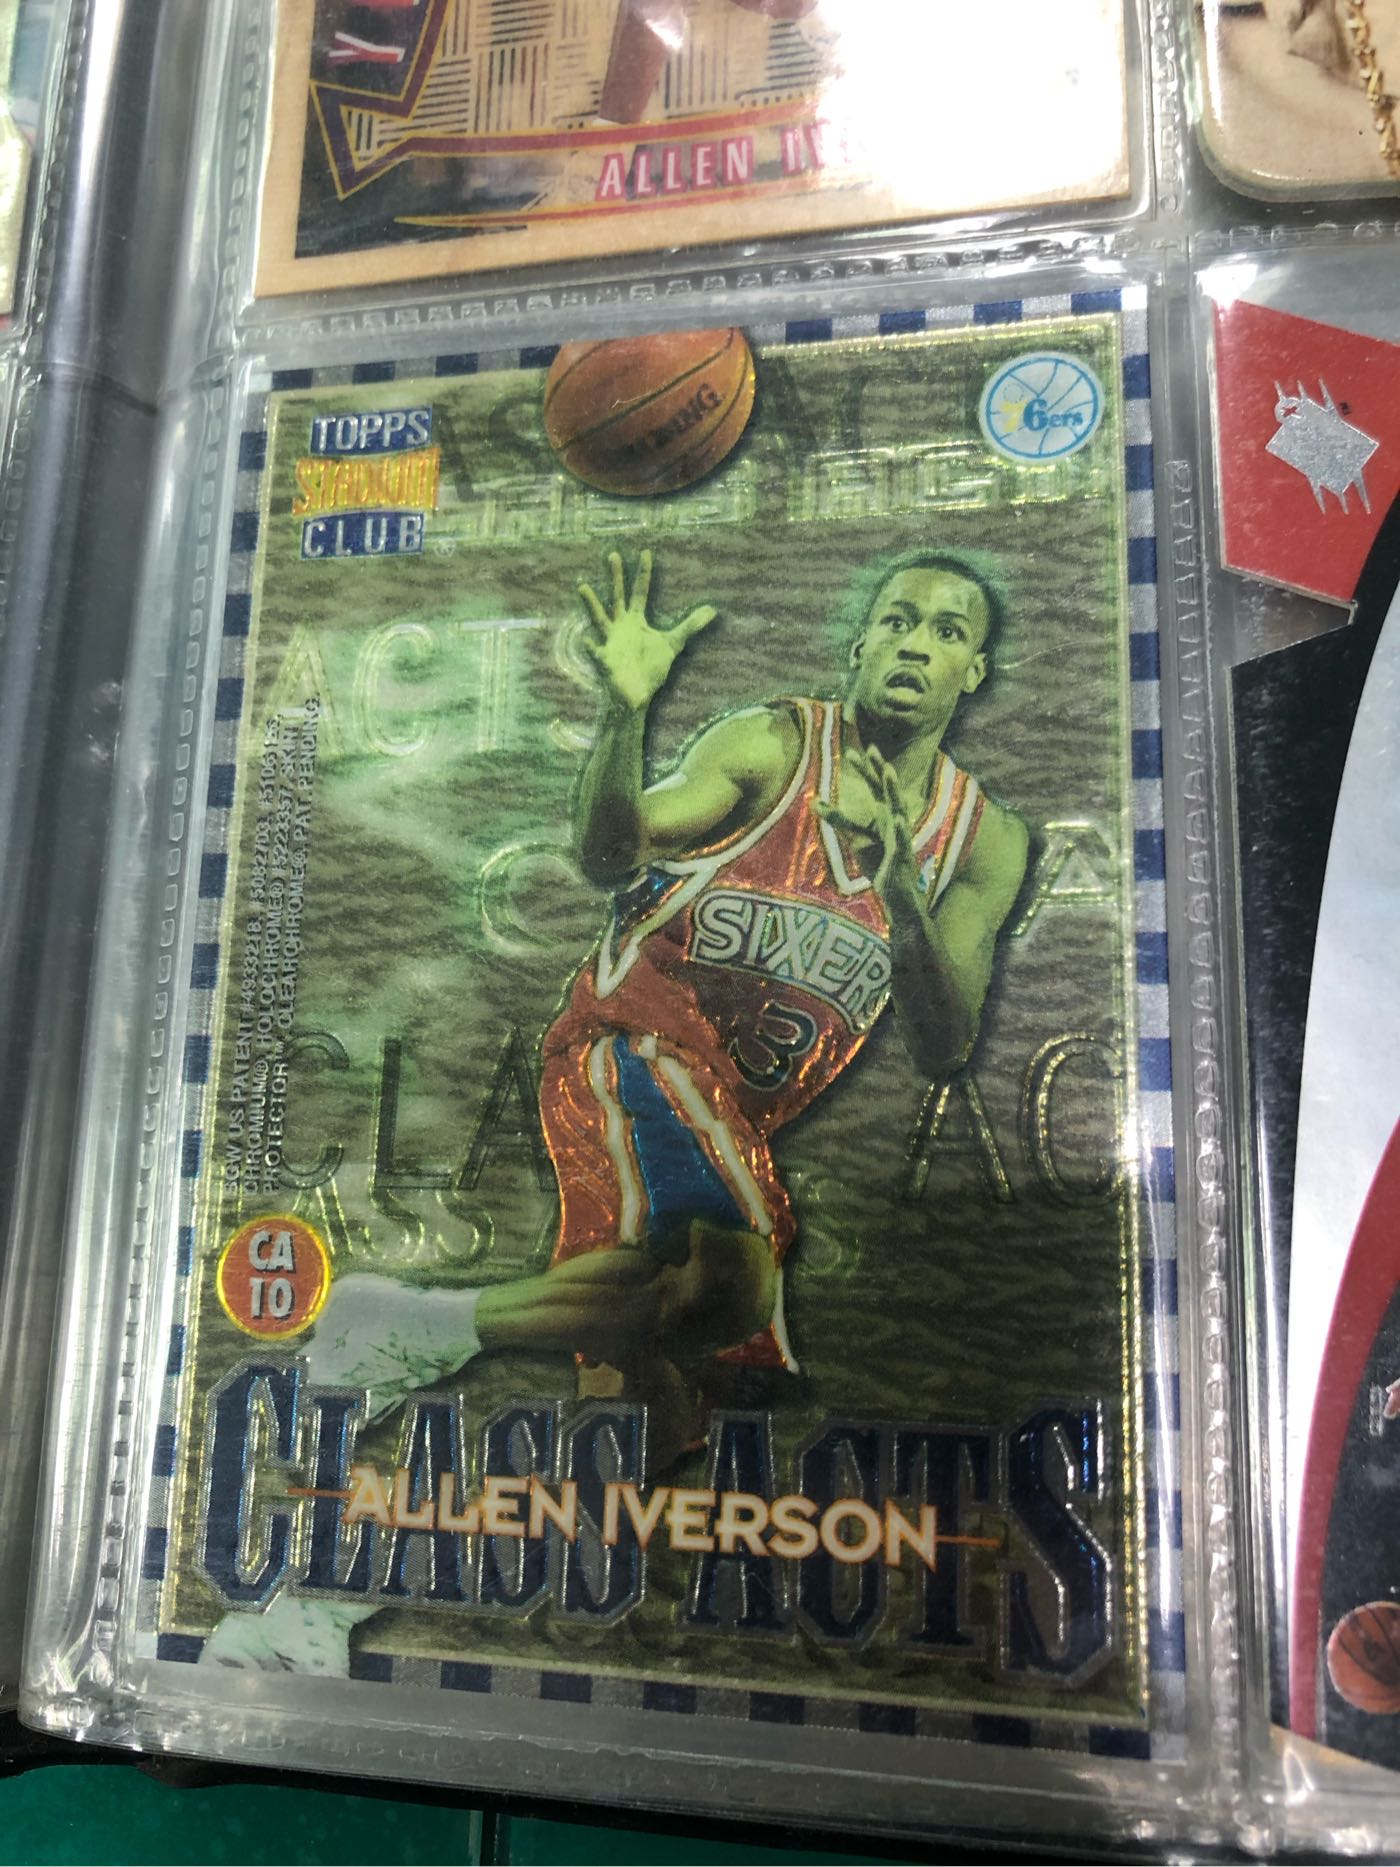 Iverson topps  特殊卡 費城七六人隊 籃球卡 球員卡